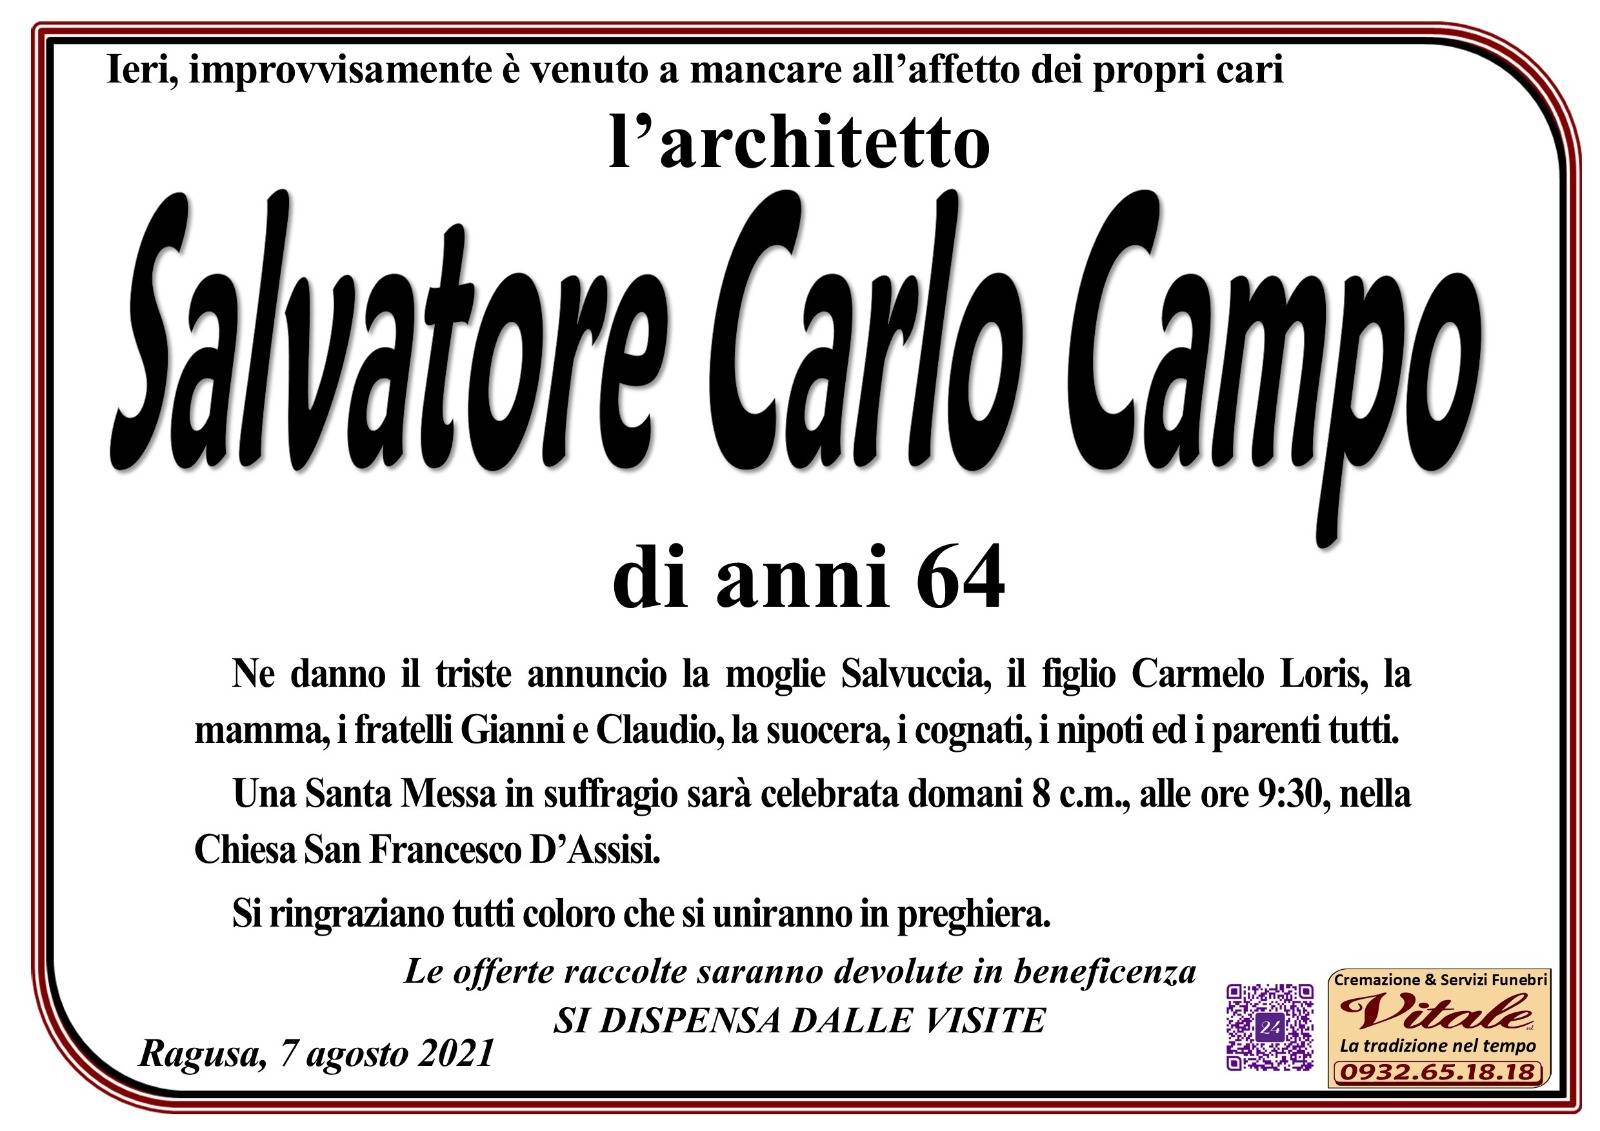 Salvatore Carlo Campo